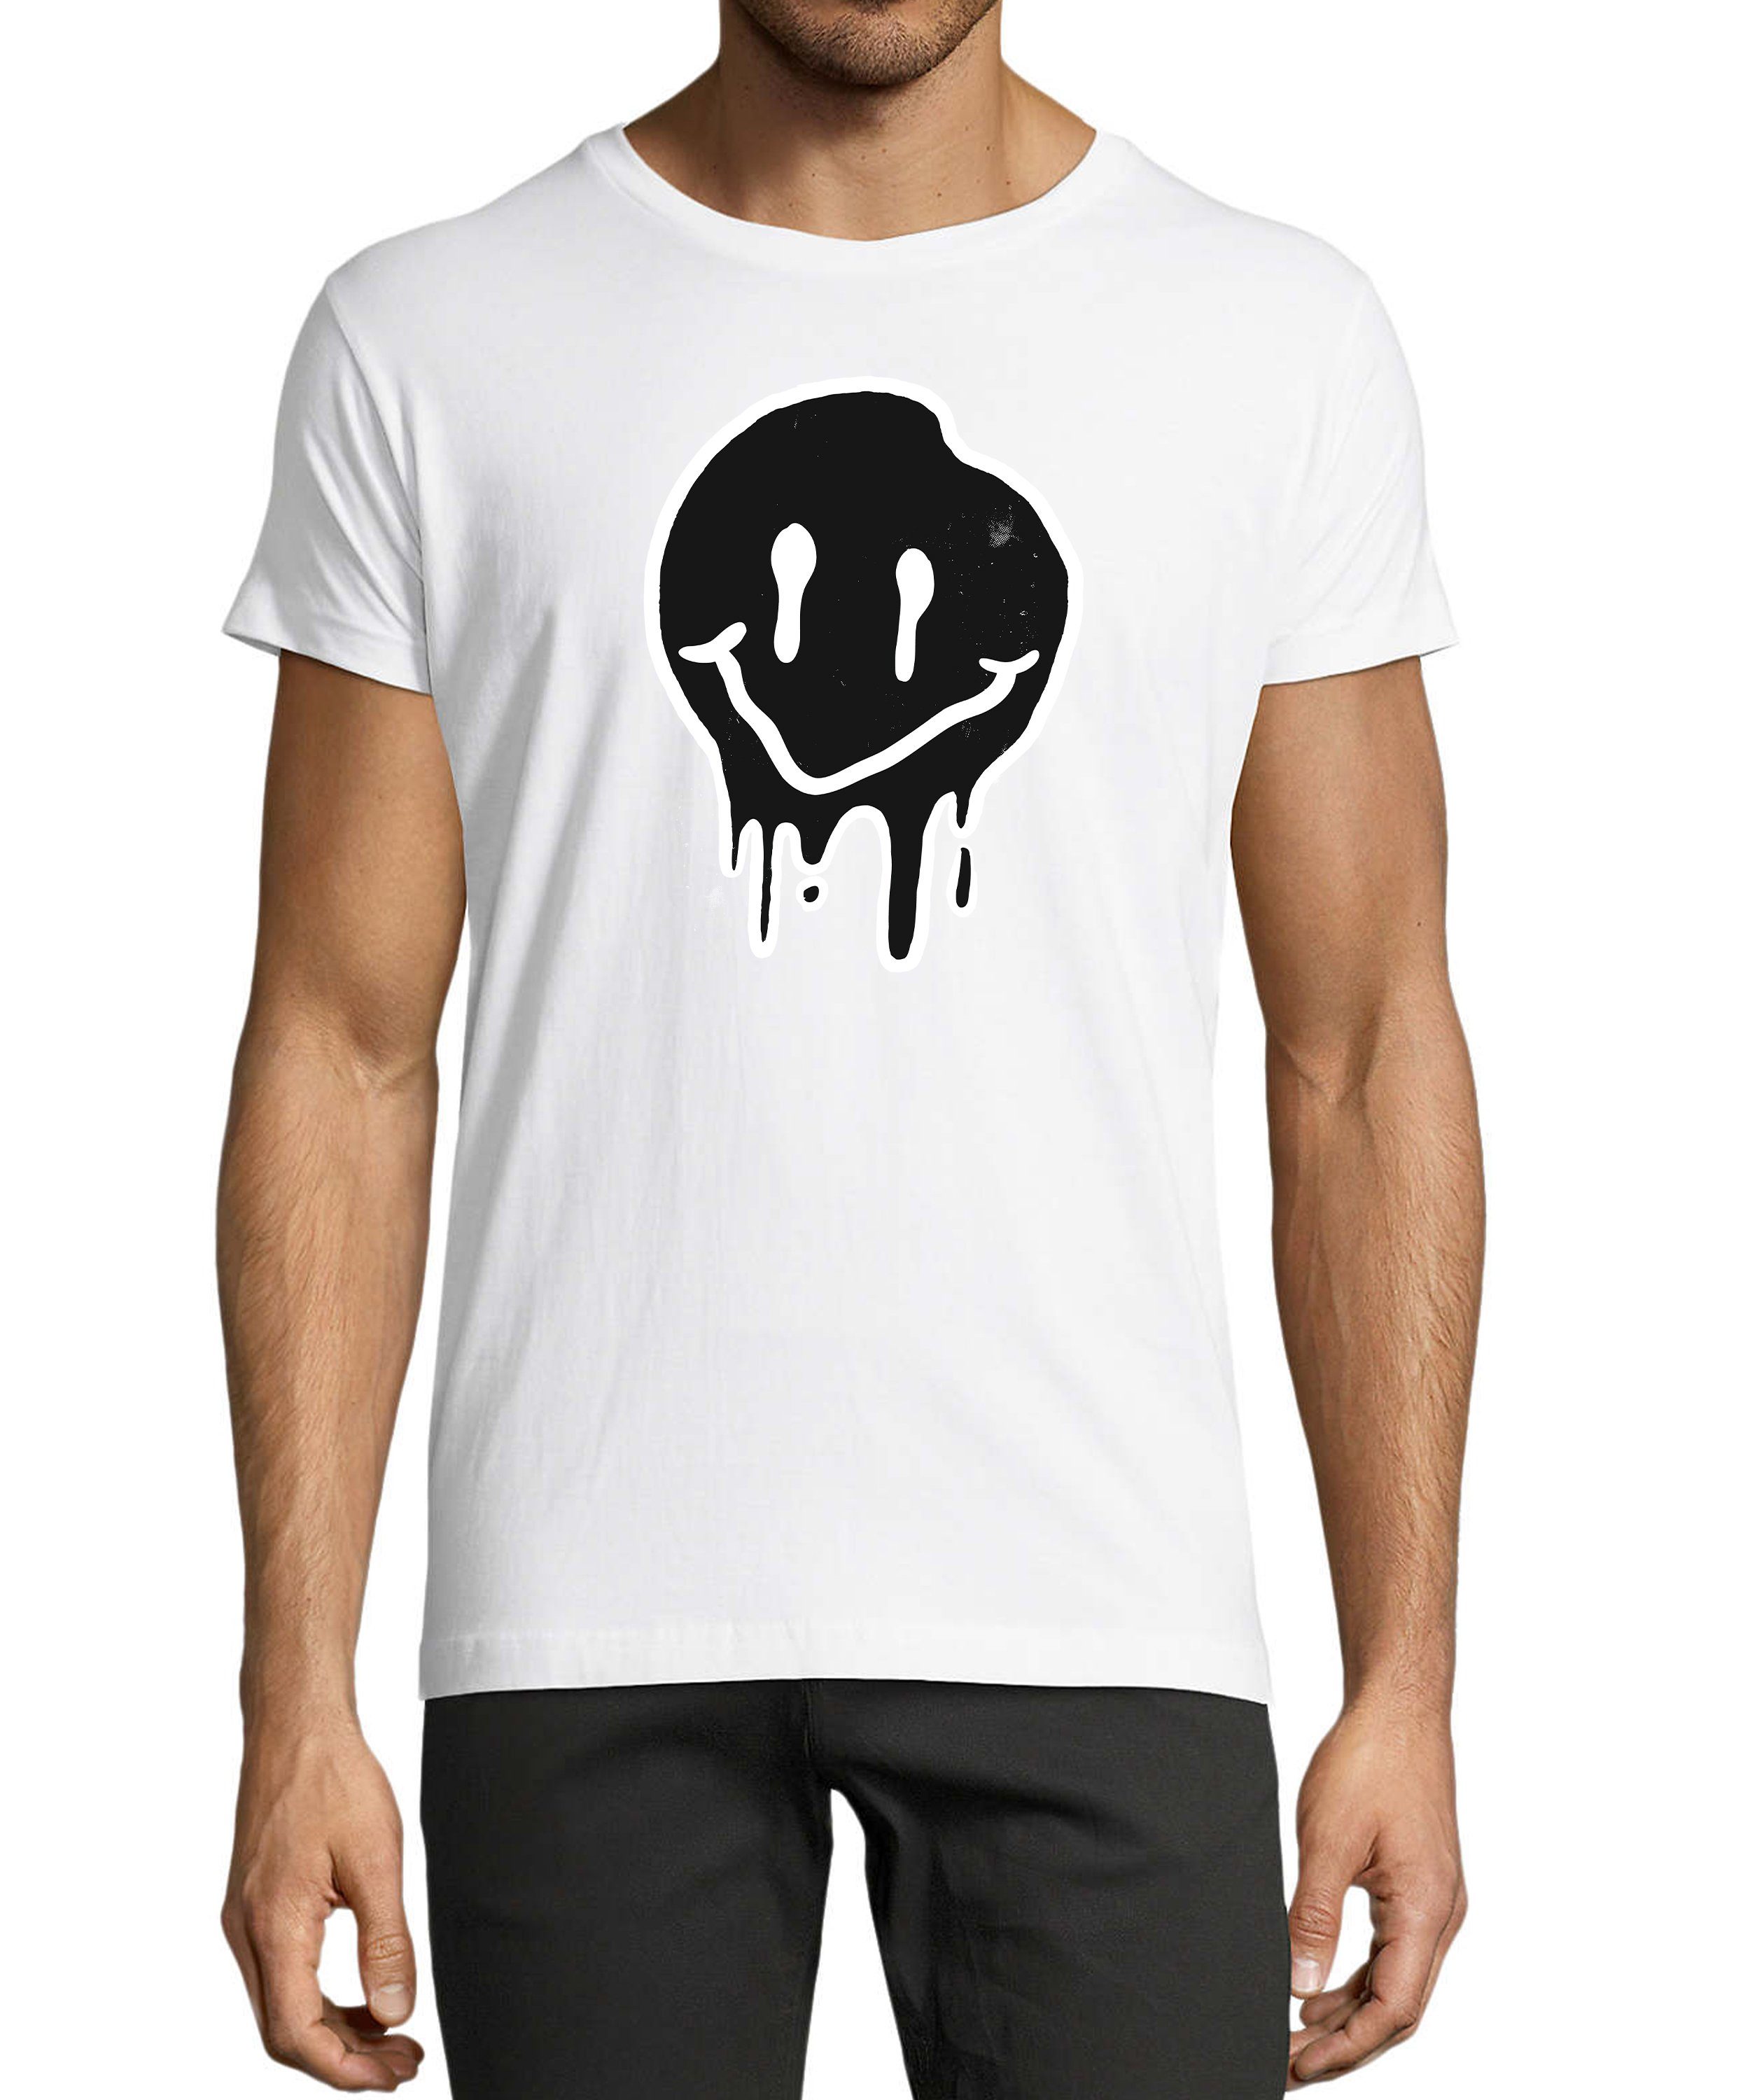 - MyDesign24 Herren T-Shirt Aufdruck Zerlaufender Regular Smiley weiss i292 mit Print Shirt Fit, Smiley Baumwollshirt